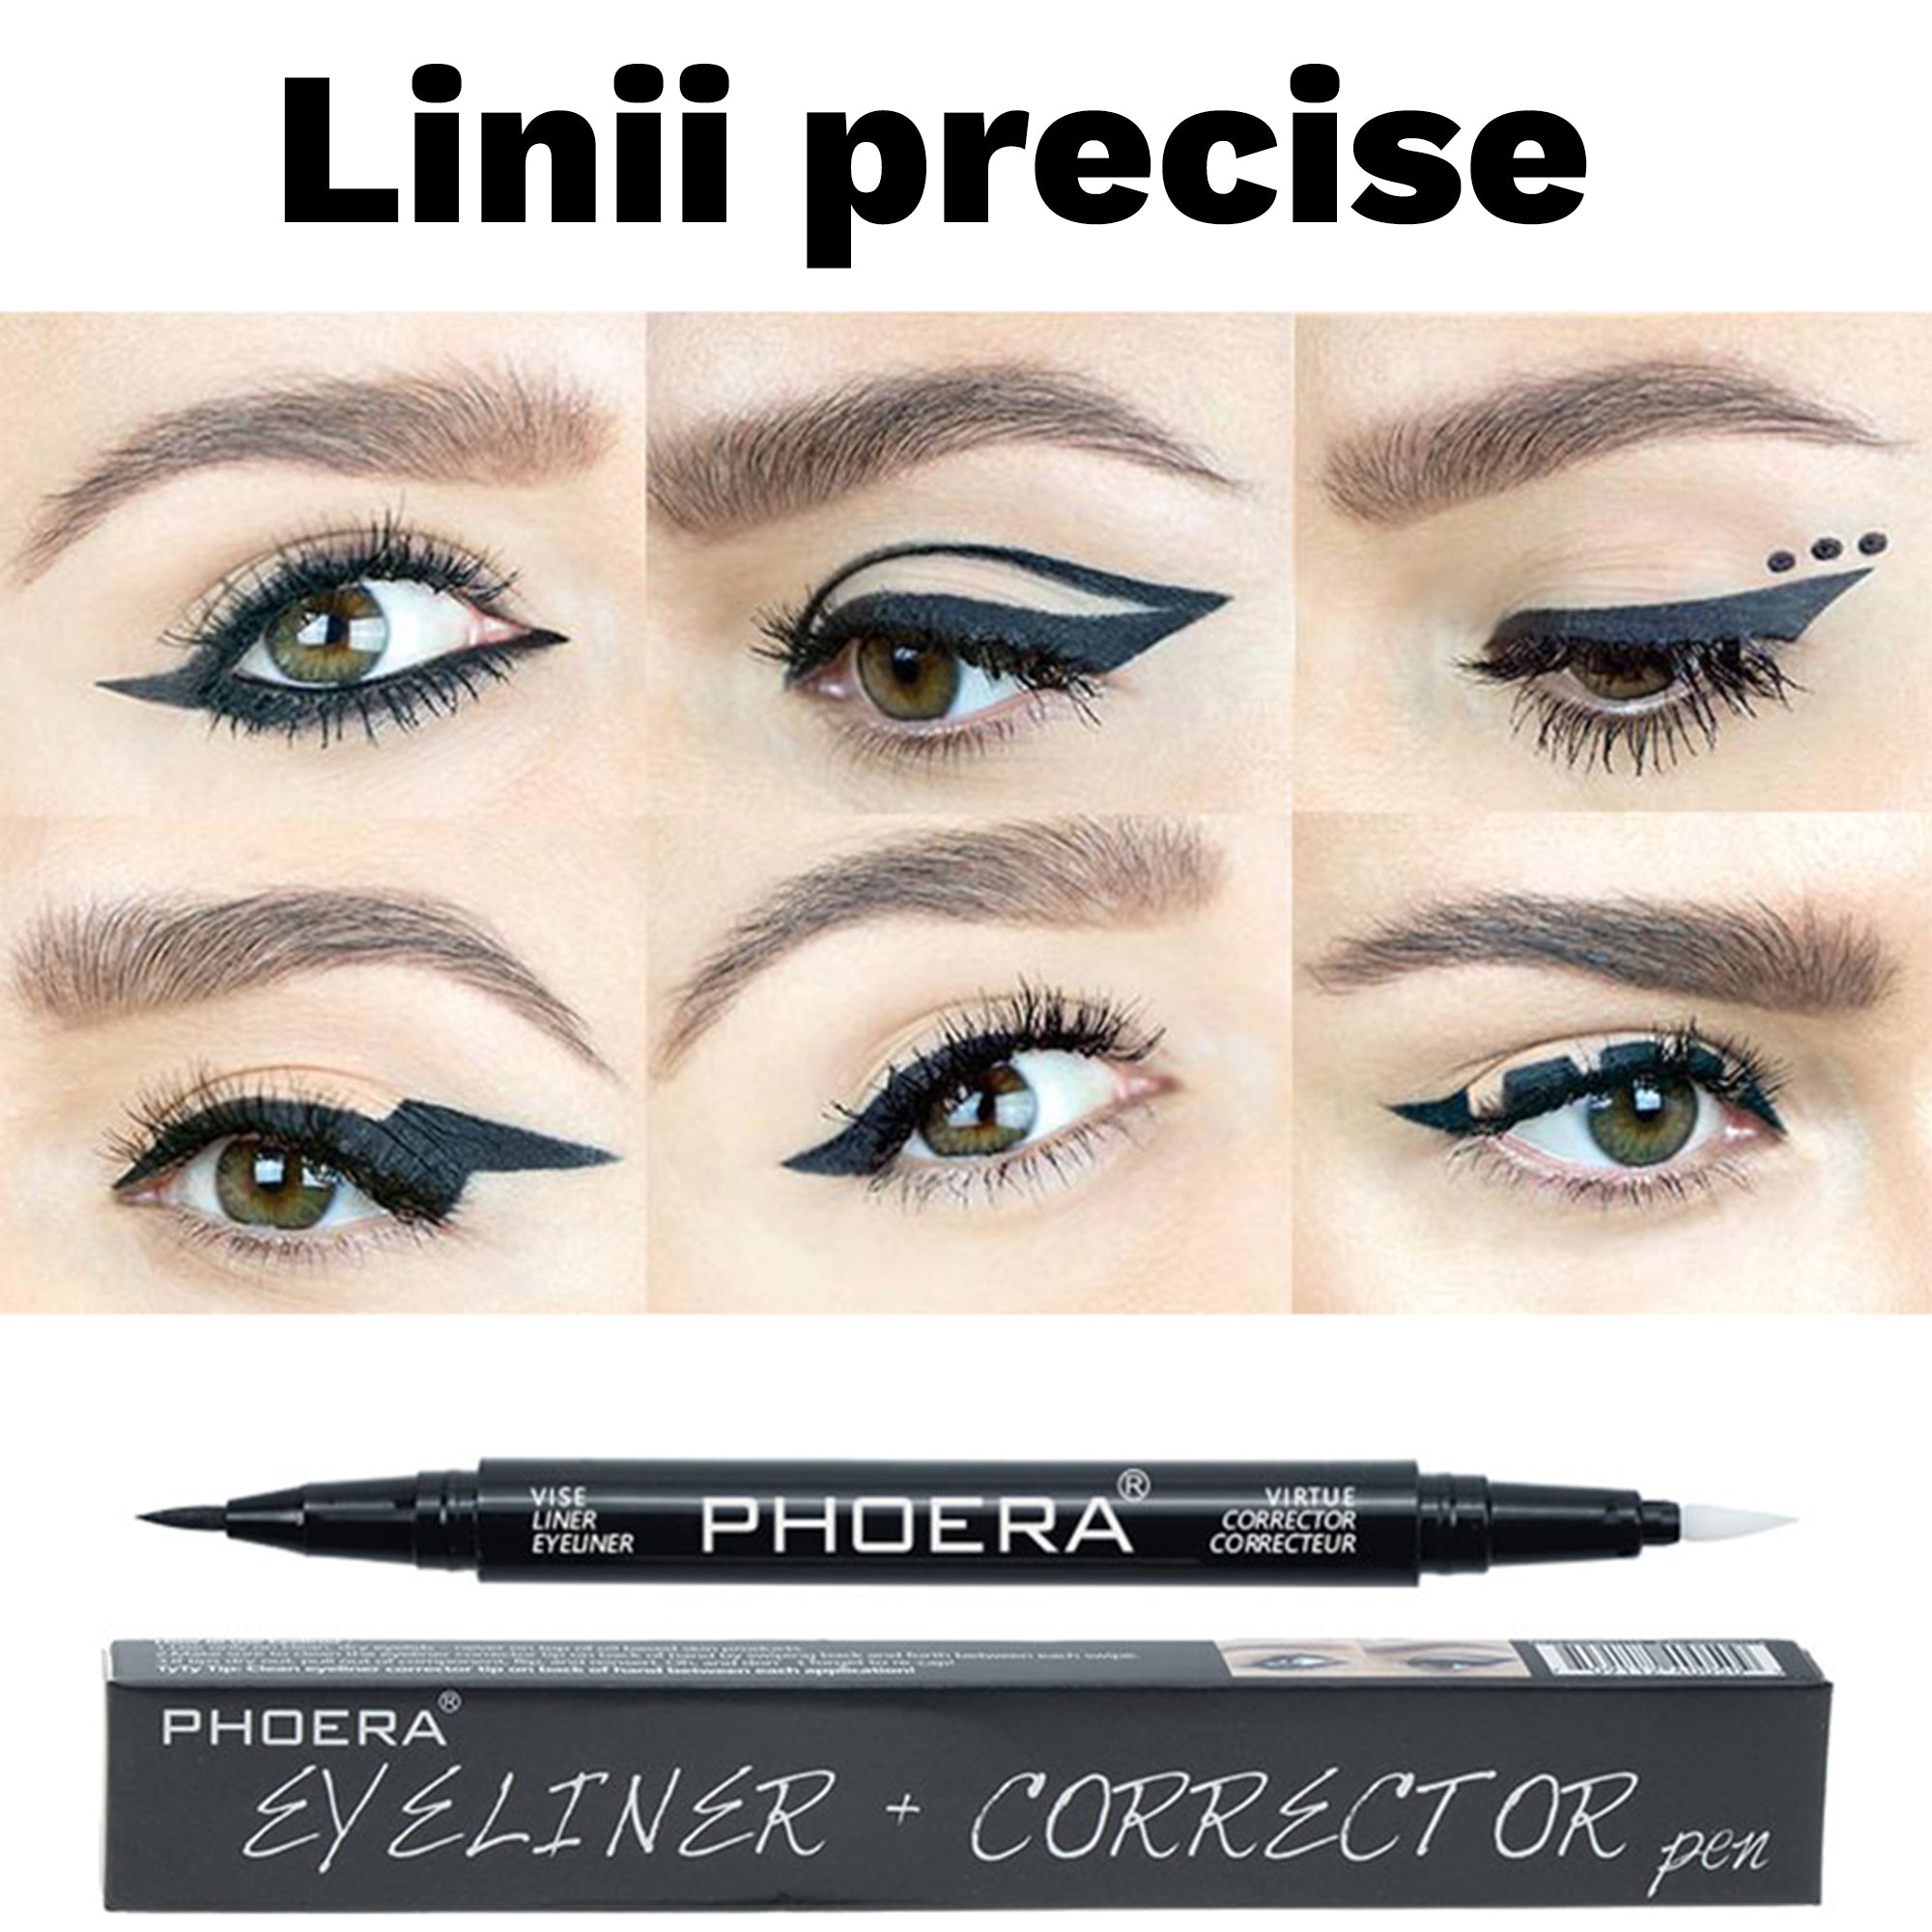 Eyeliner & Corector Duo Line PRO 2 in 1